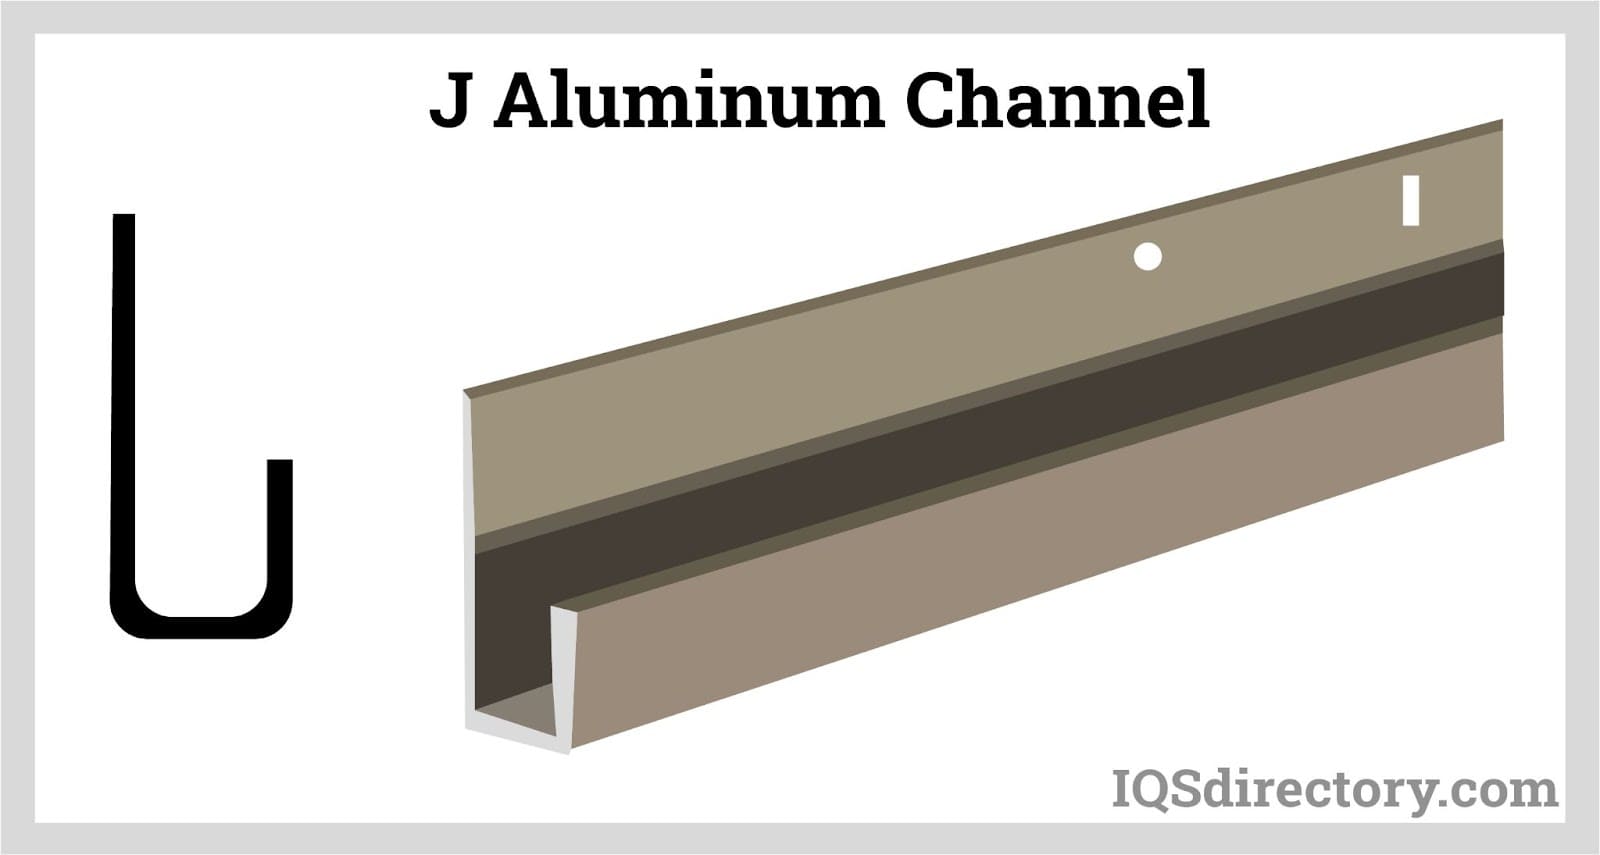 J Aluminum Channel